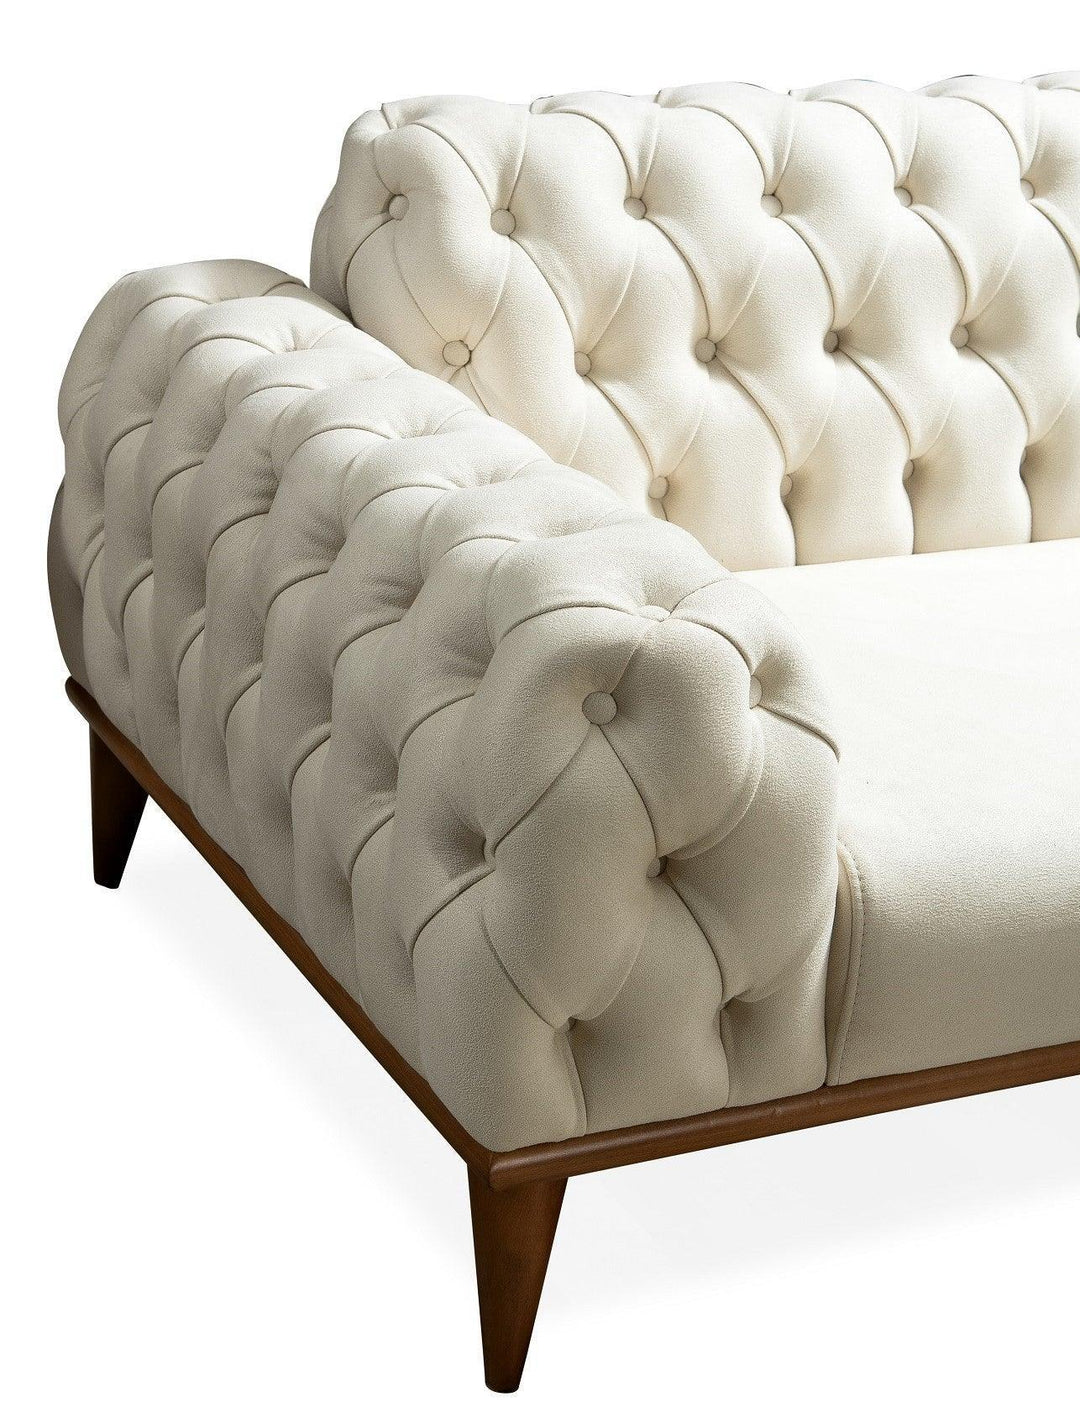 Sofa Collection: Santana - Classic Furniture Dubai UAE